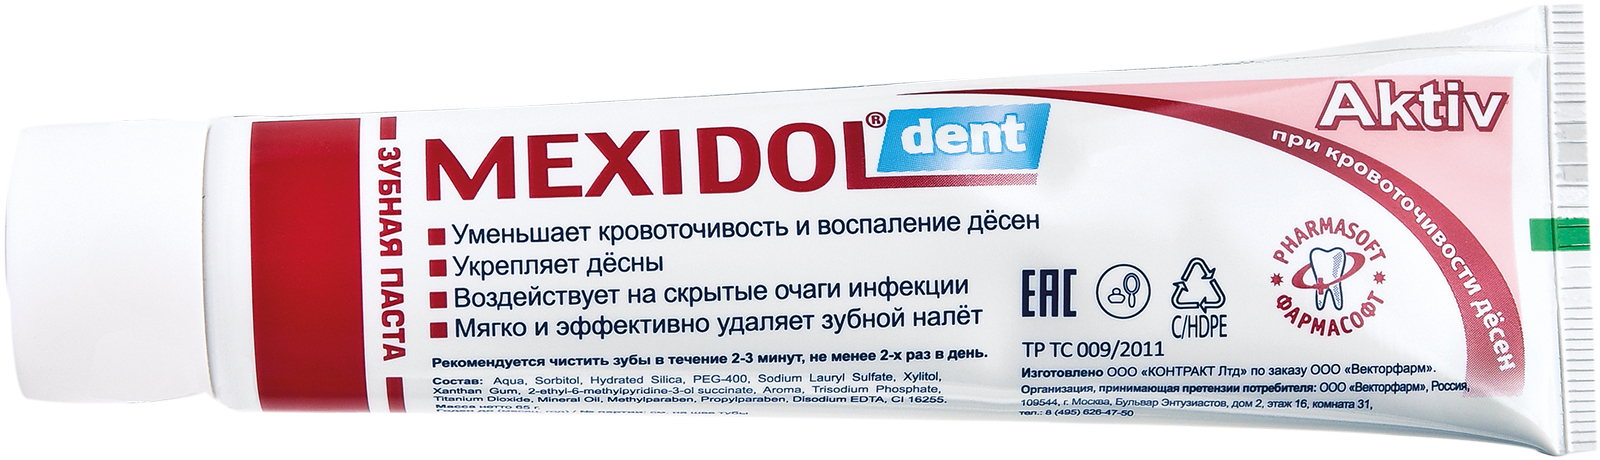 Мексидол Дент Актив, зубная паста, 100 г зубная паста mexidol dent activ 65 г